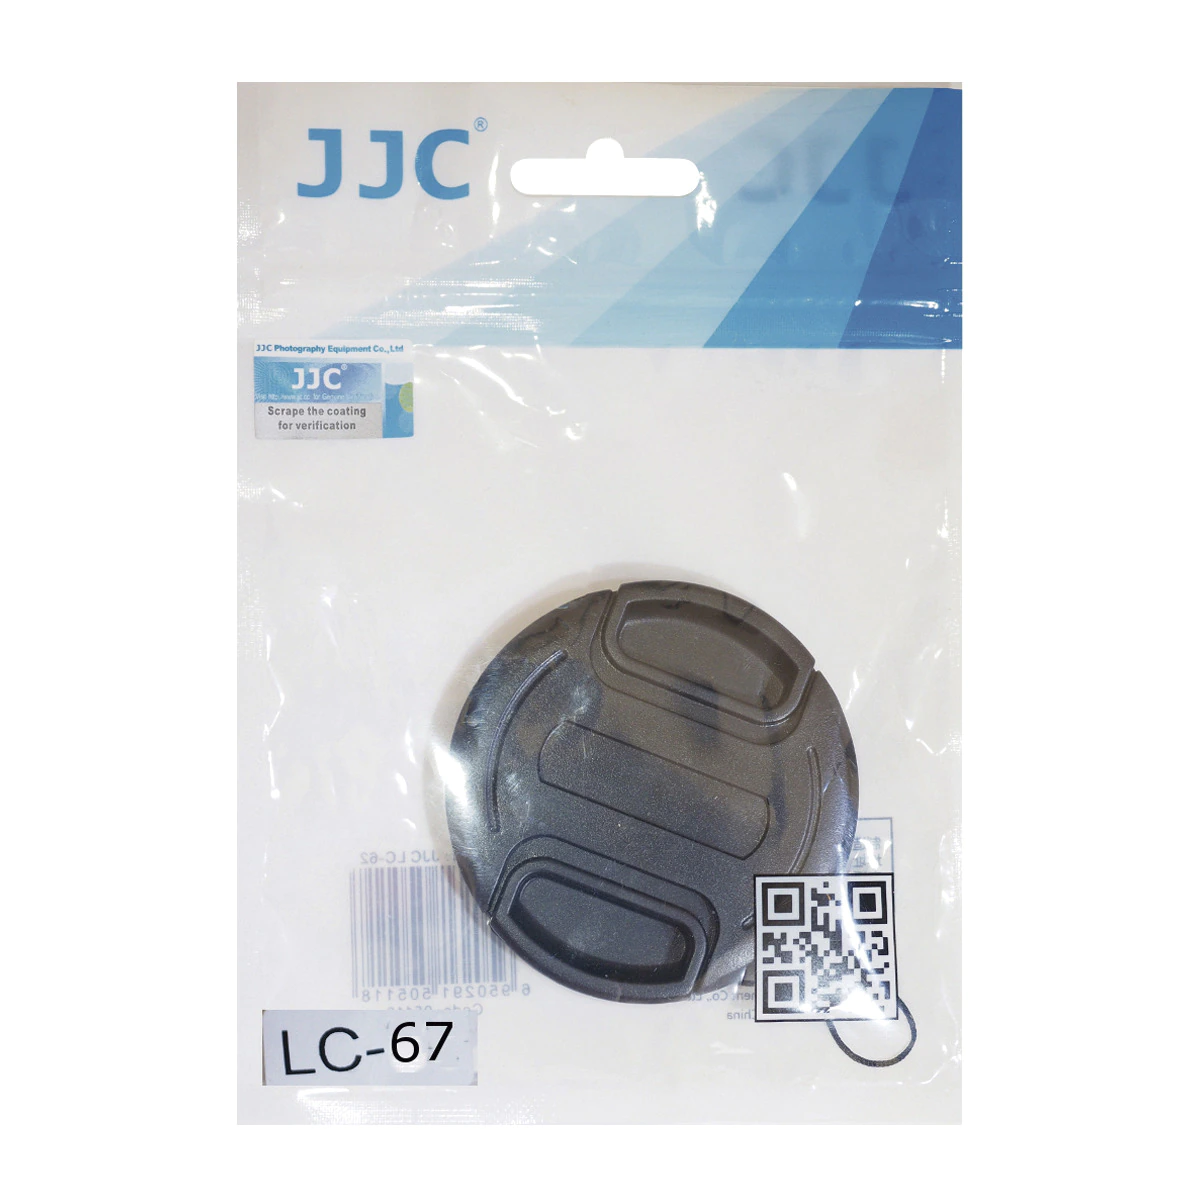 Tapa de protección JJC para objetivos con diametro 67 mm